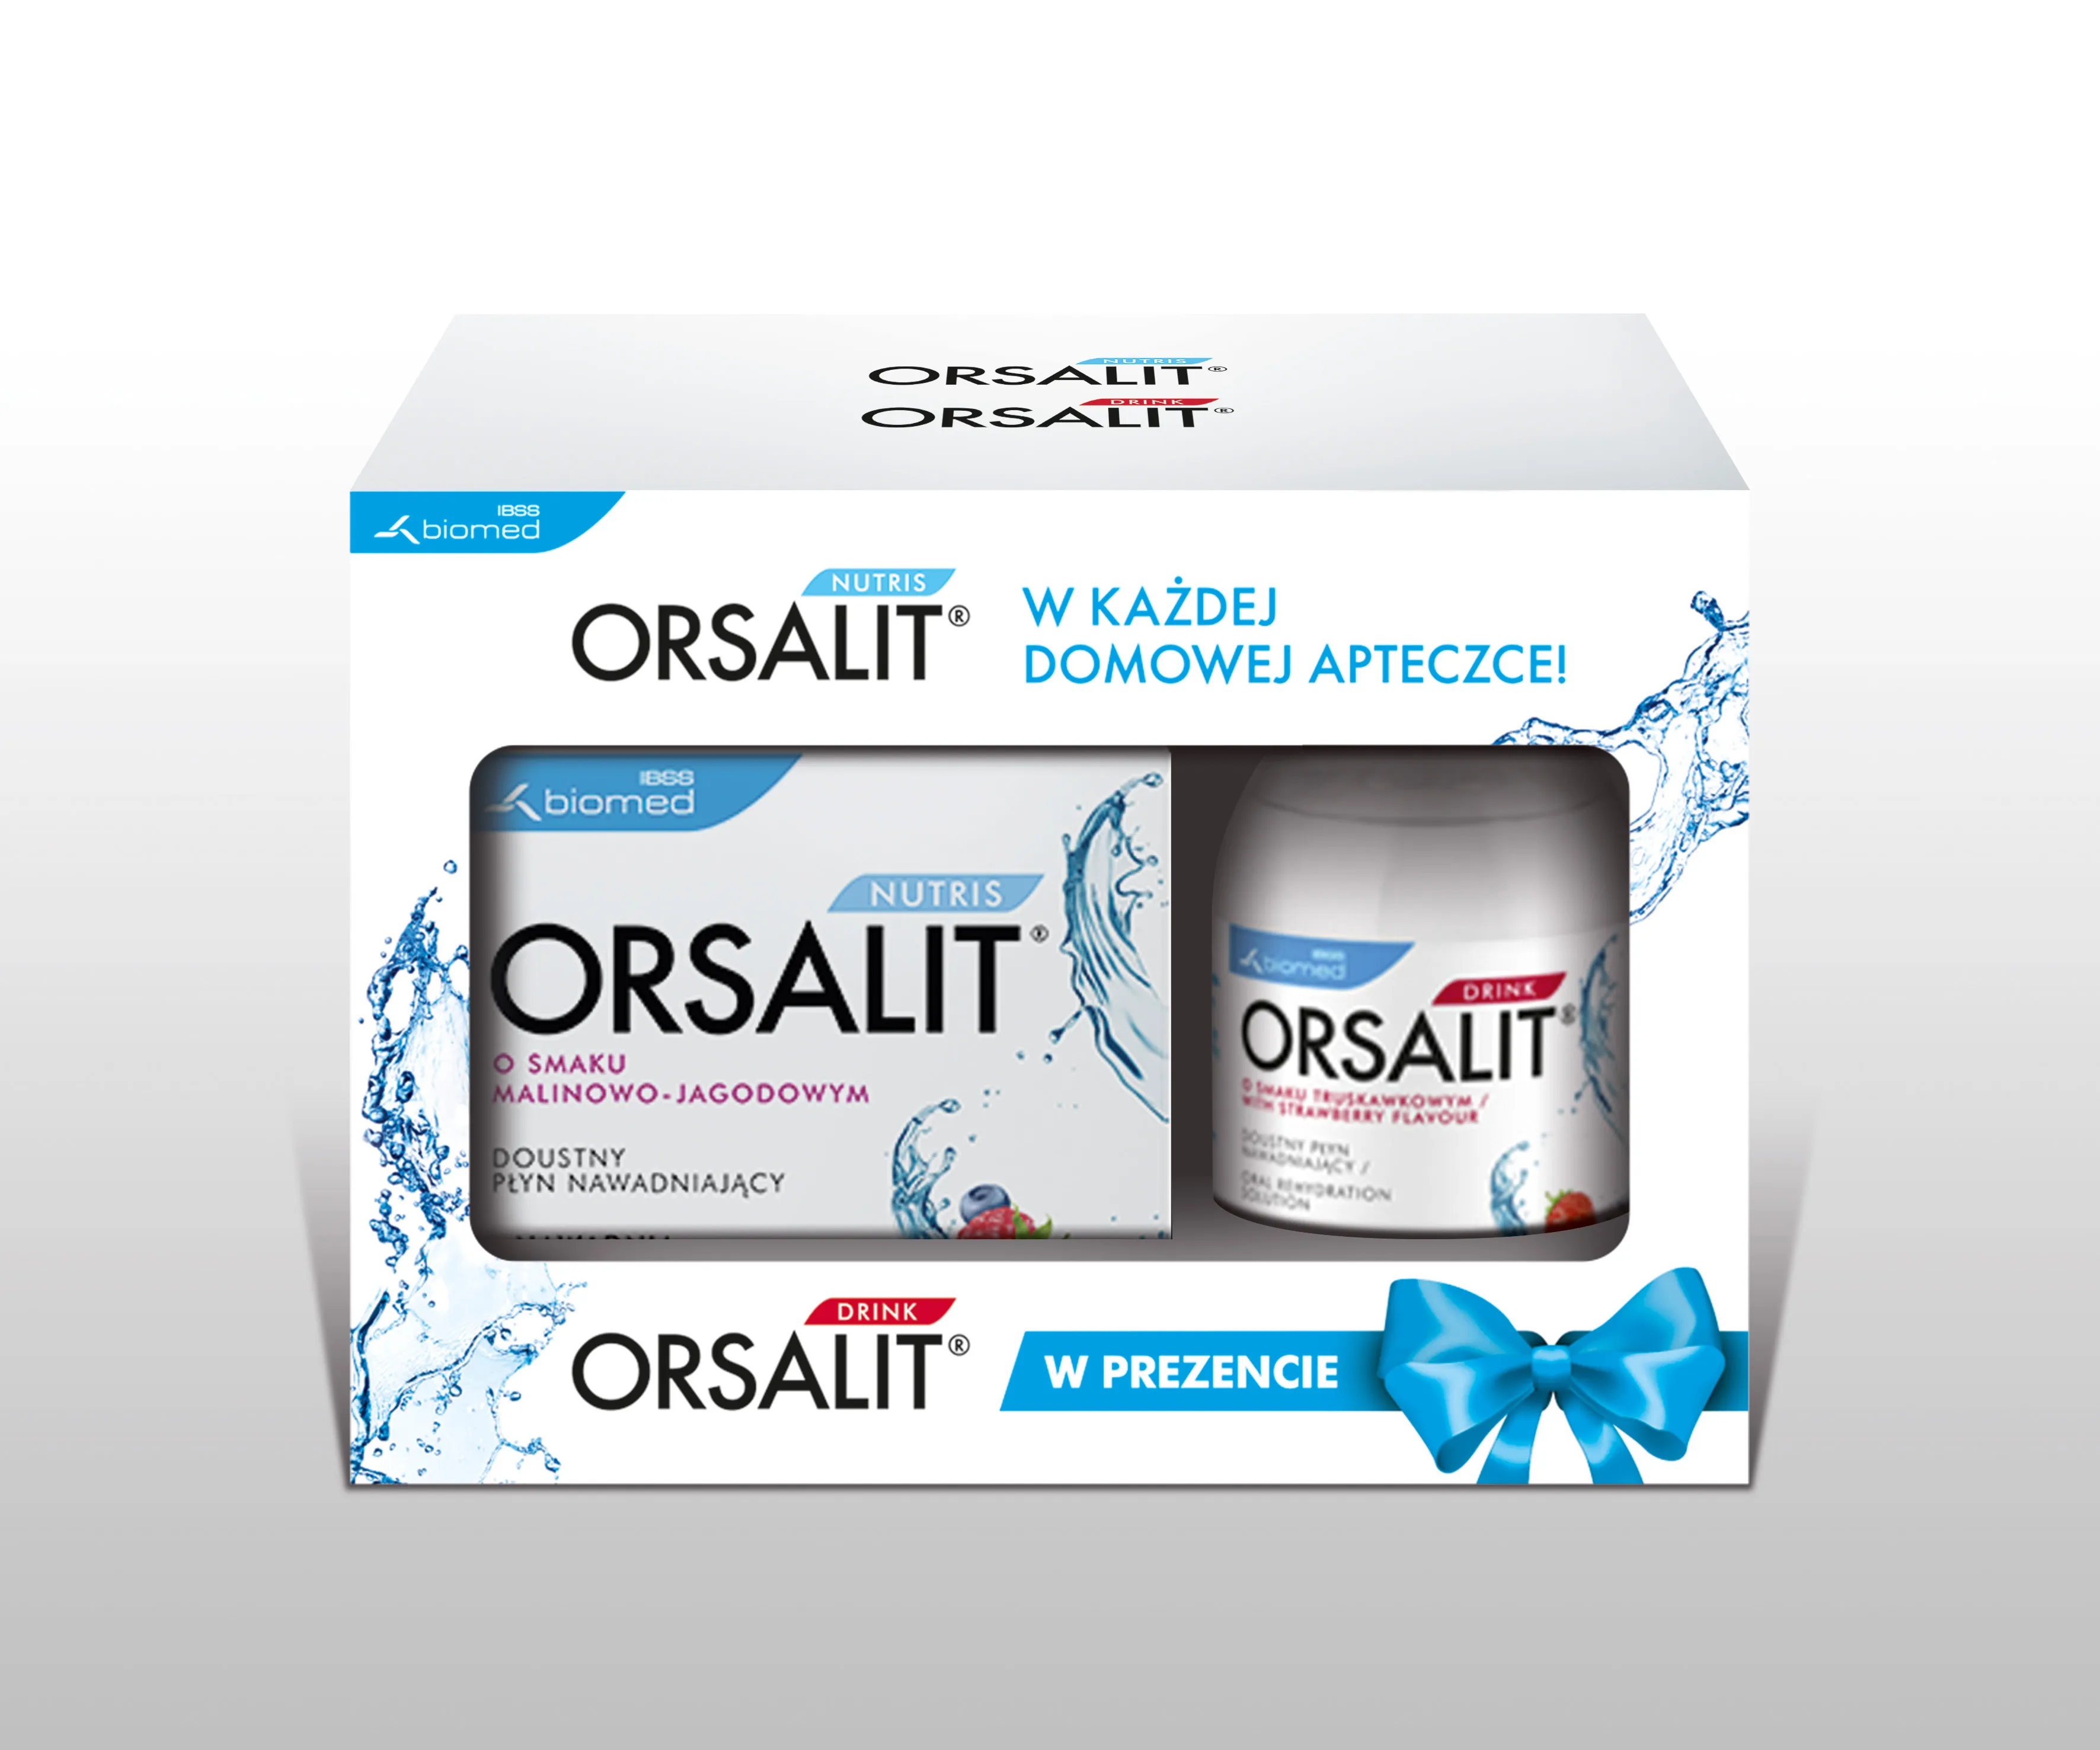 Orsalit Nutris + Orsalit Drink w promocji, zestaw